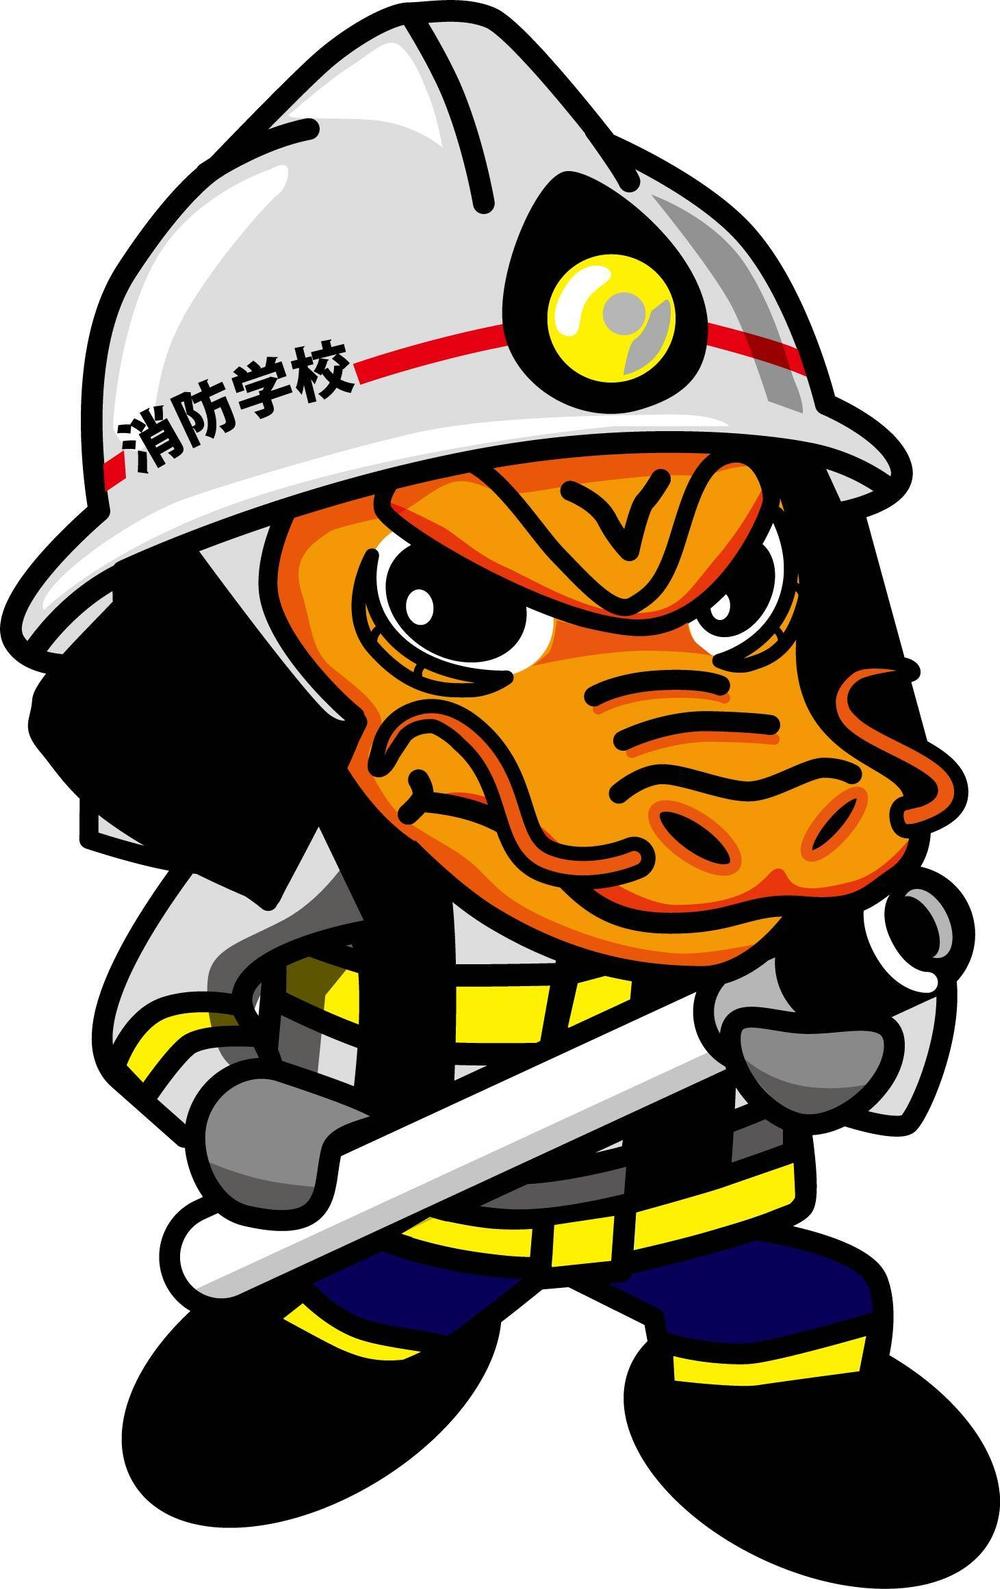 消防学校のキャラクターデザイン